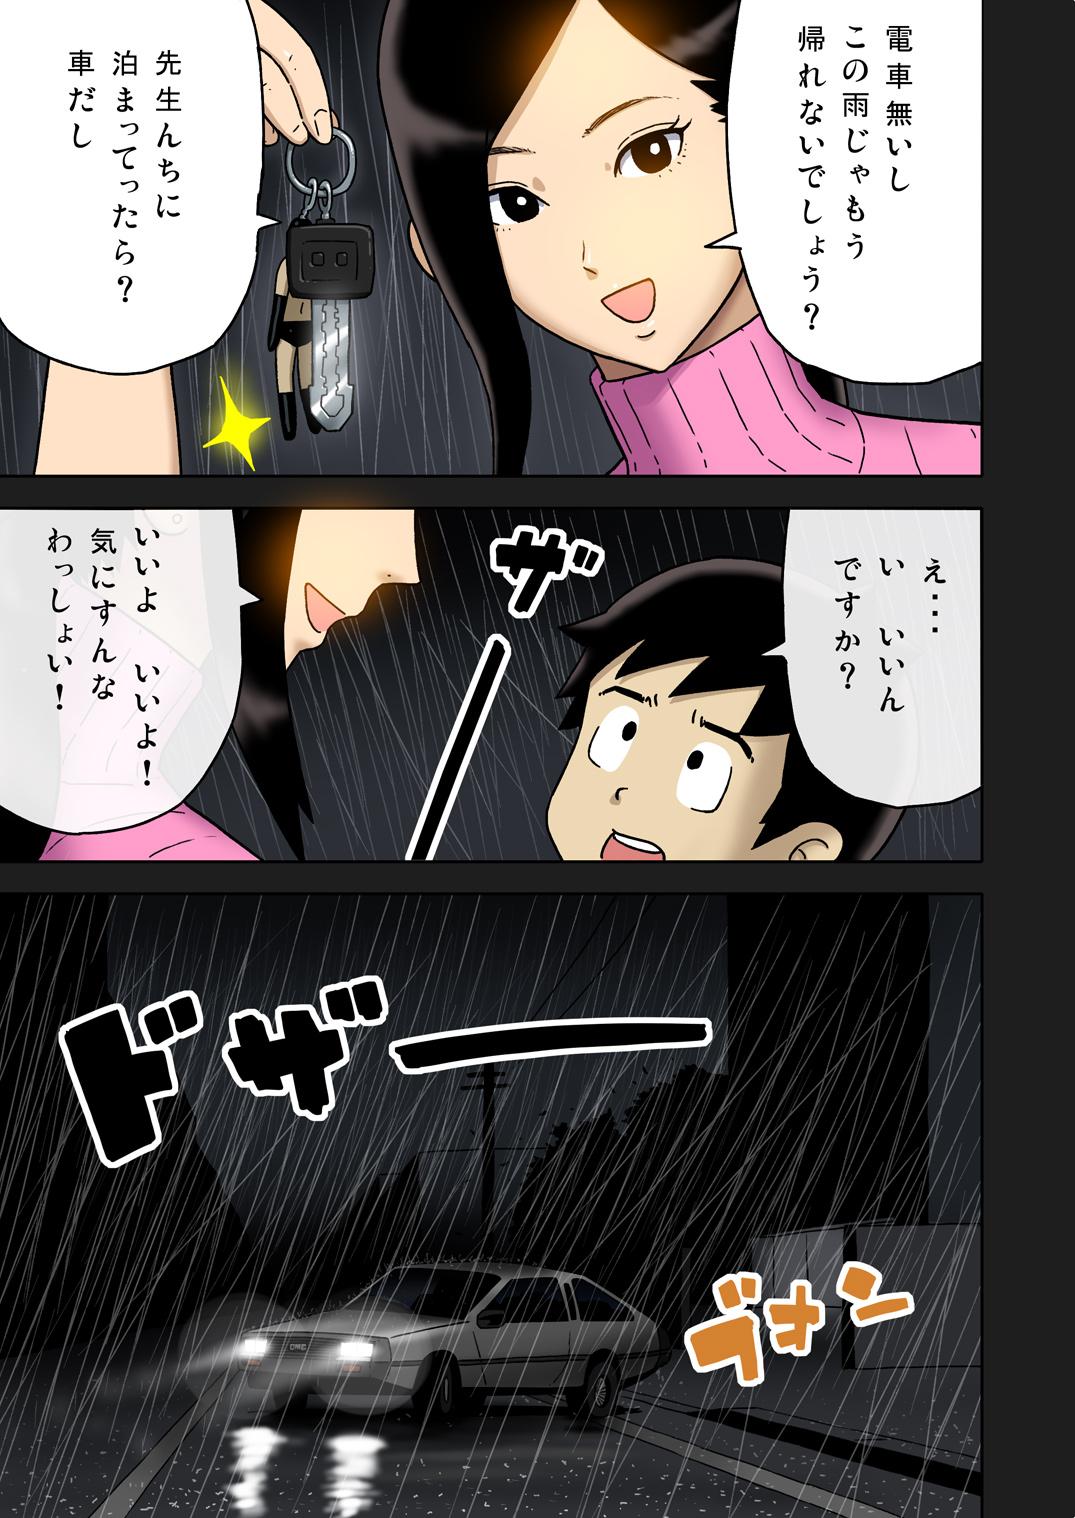 [Enka Boots] Enka Boots no Manga 1 - Juku no Sensei ga Joou-sama V2.0 6